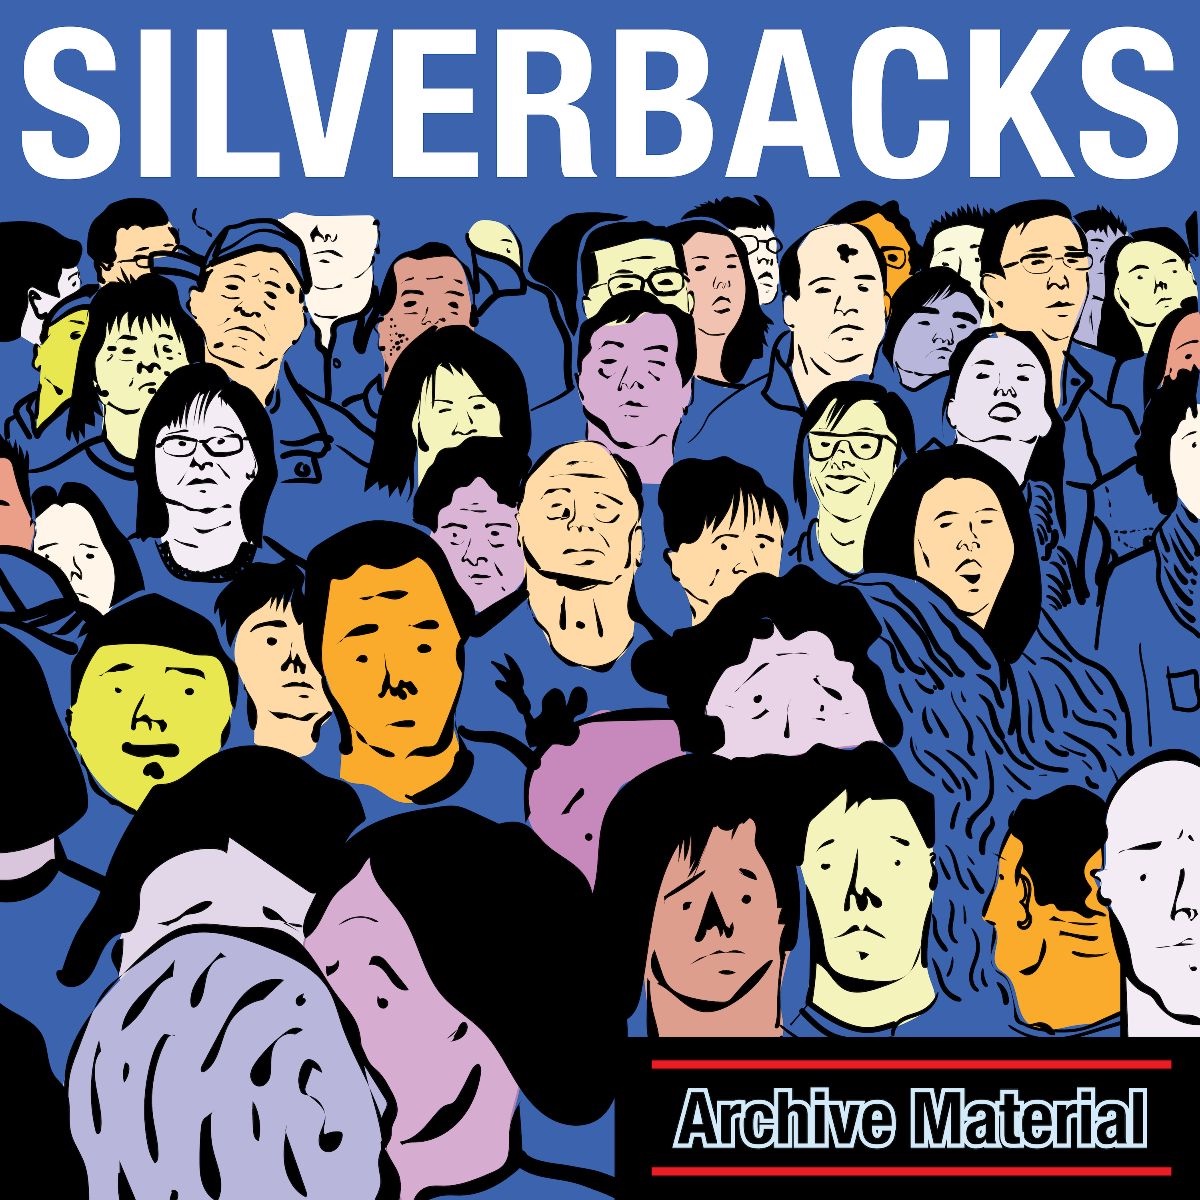 silverbacks-archive-material-full-time-hobby.jpg